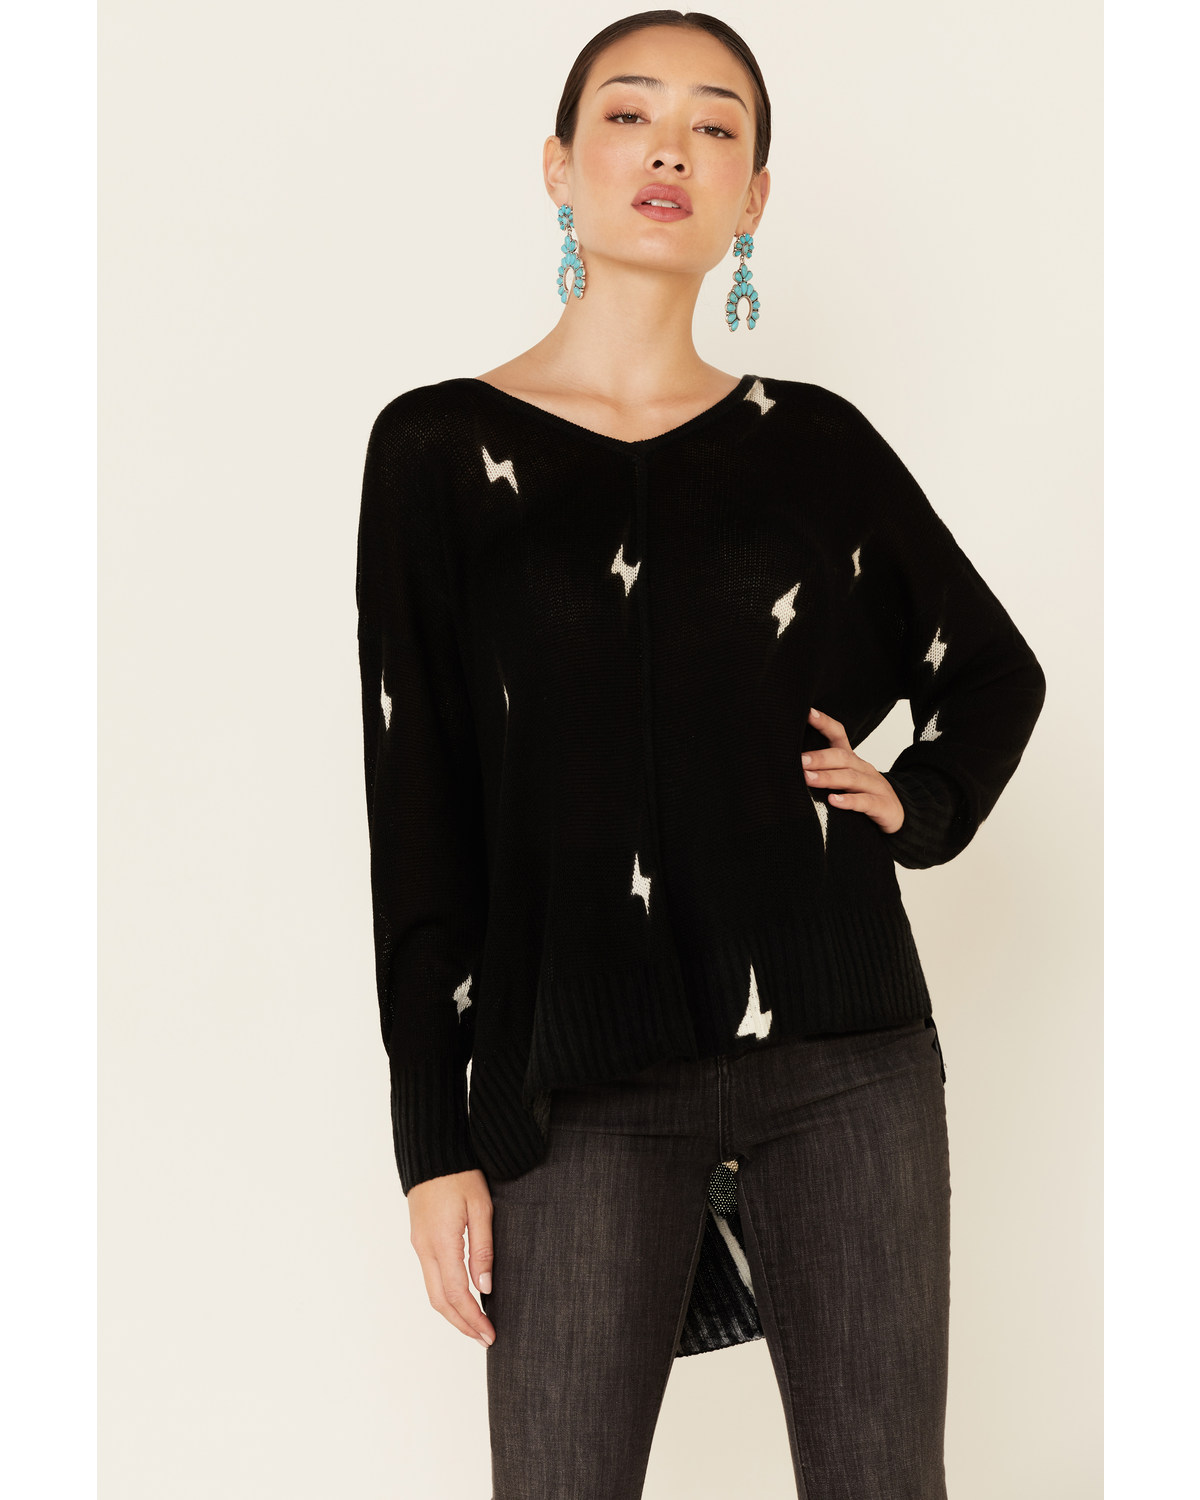 Revel Women's Lightening Pullover Sweater